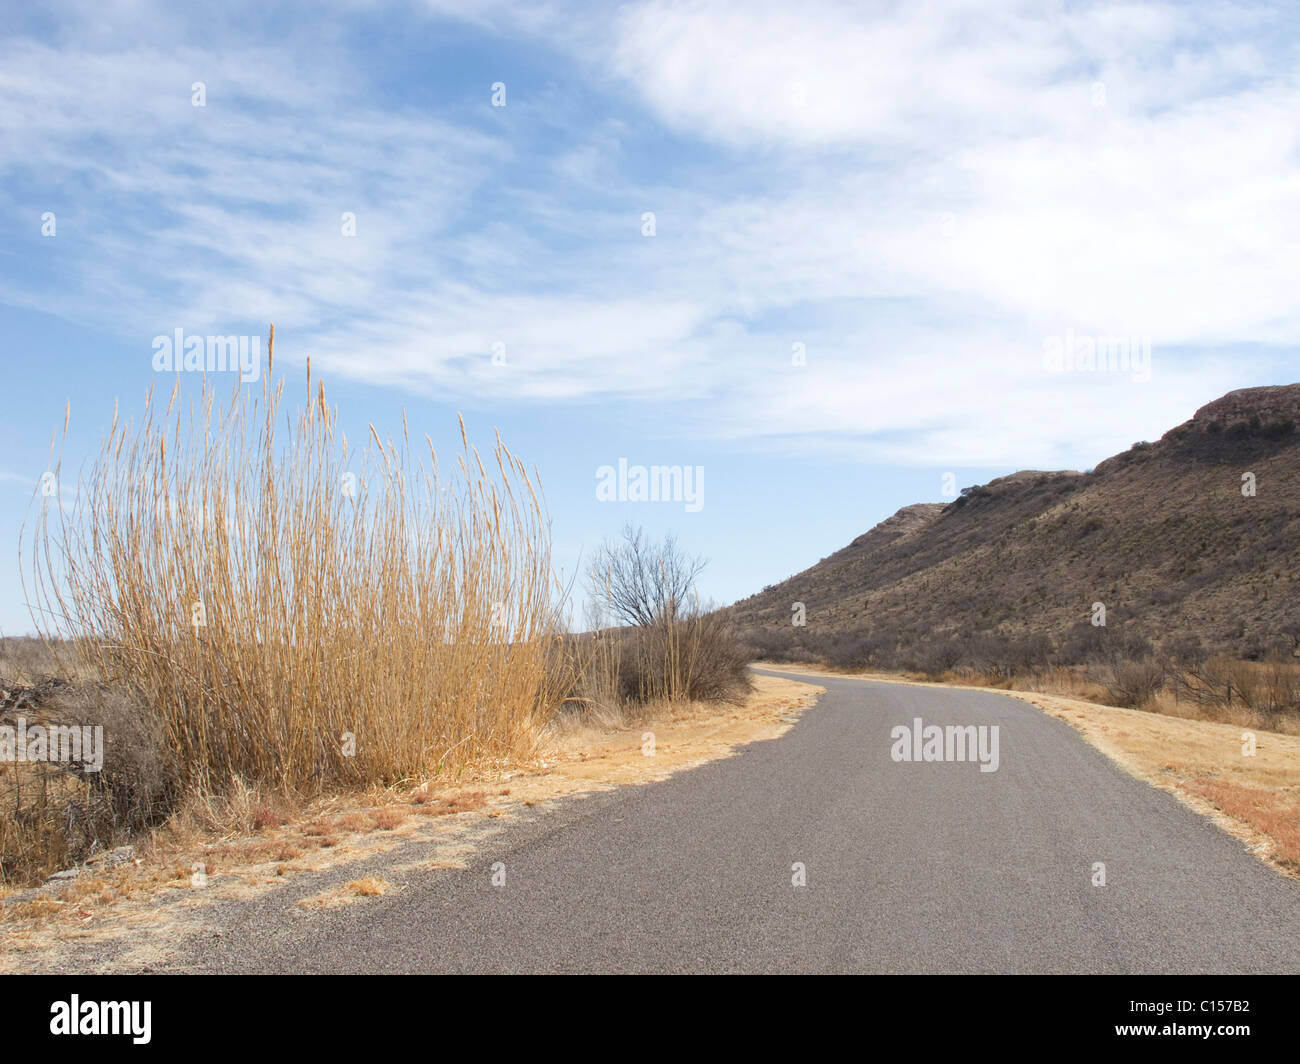 Post Park Road, County Road en el oeste de Texas cerca de la ciudad de Maratón, situado en el extremo norte del desierto de Chihuahua. Foto de stock